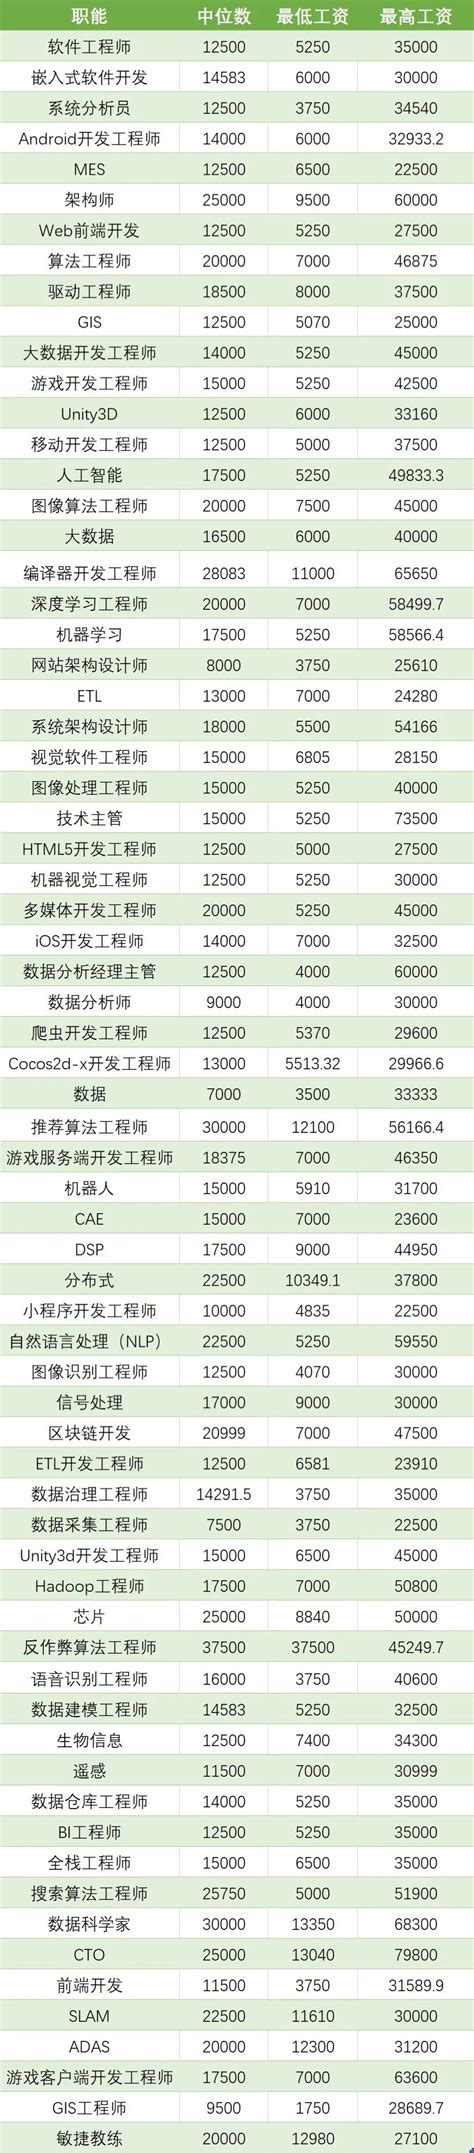 CodeSubmit：2022年各国程序员薪资排名 | 互联网数据资讯网-199IT | 中文互联网数据研究资讯中心-199IT